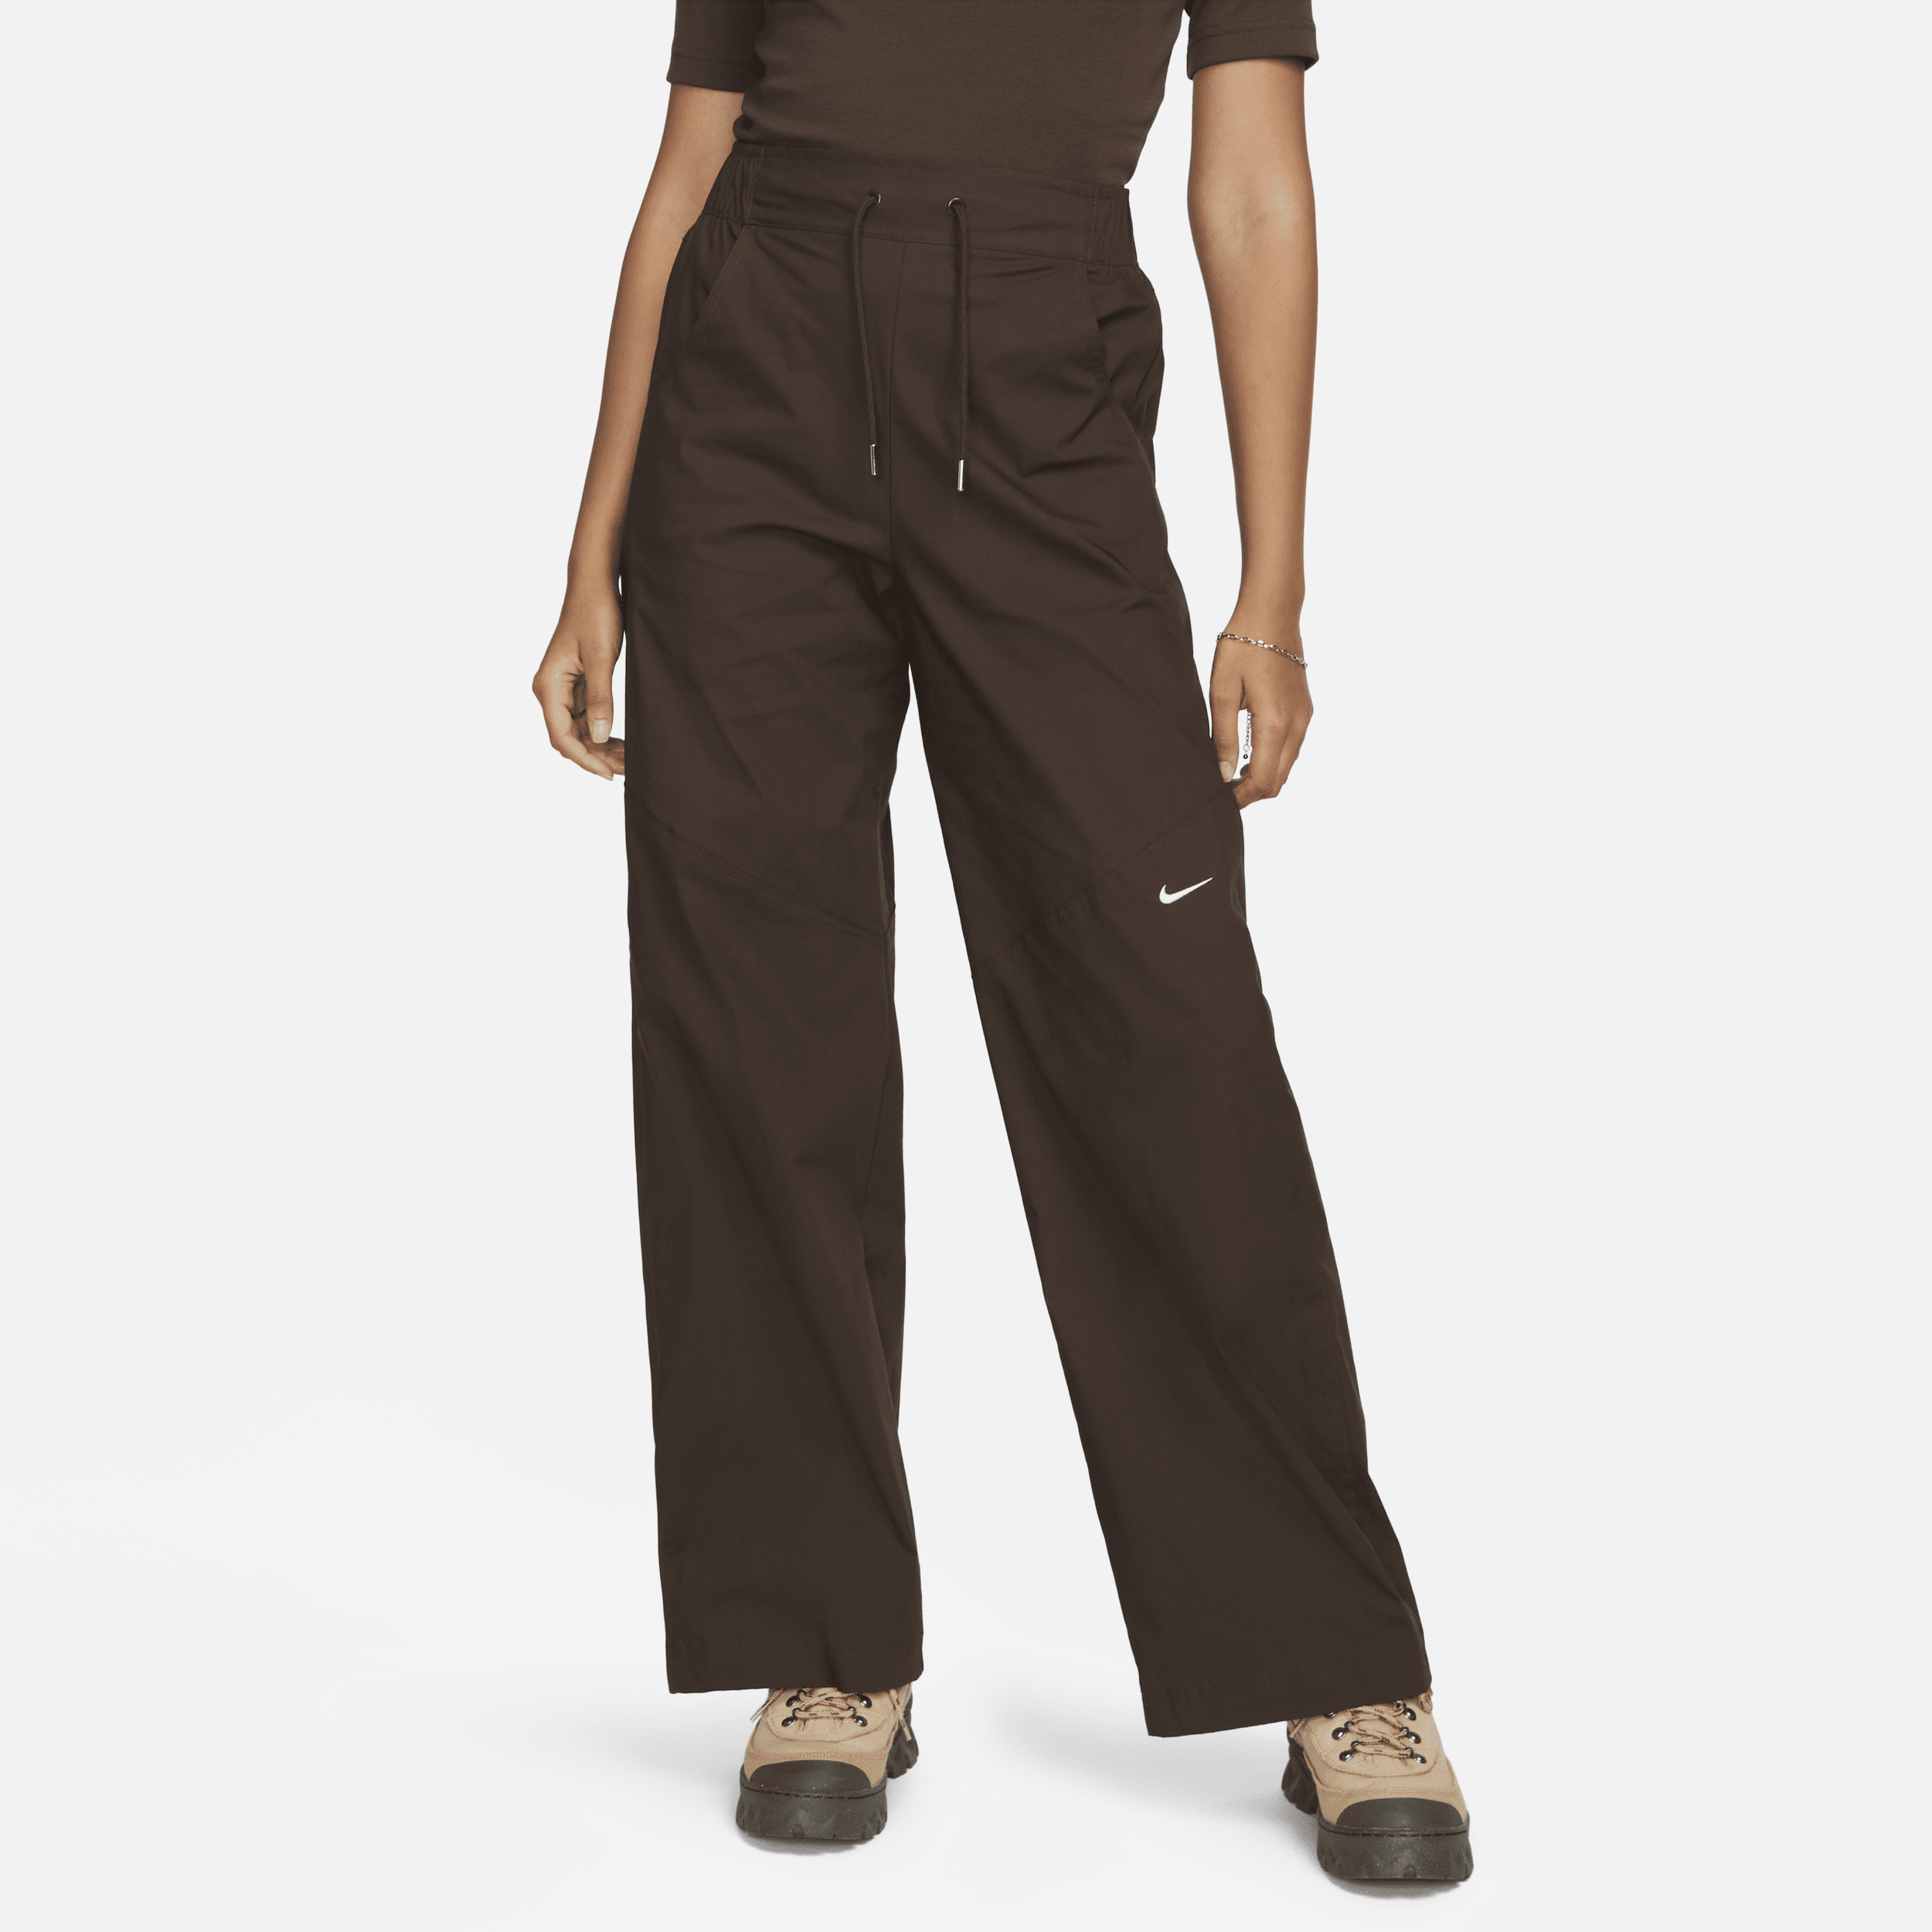 Vævede Nike Sportswear Essential-bukser med høj talje til kvinder - brun